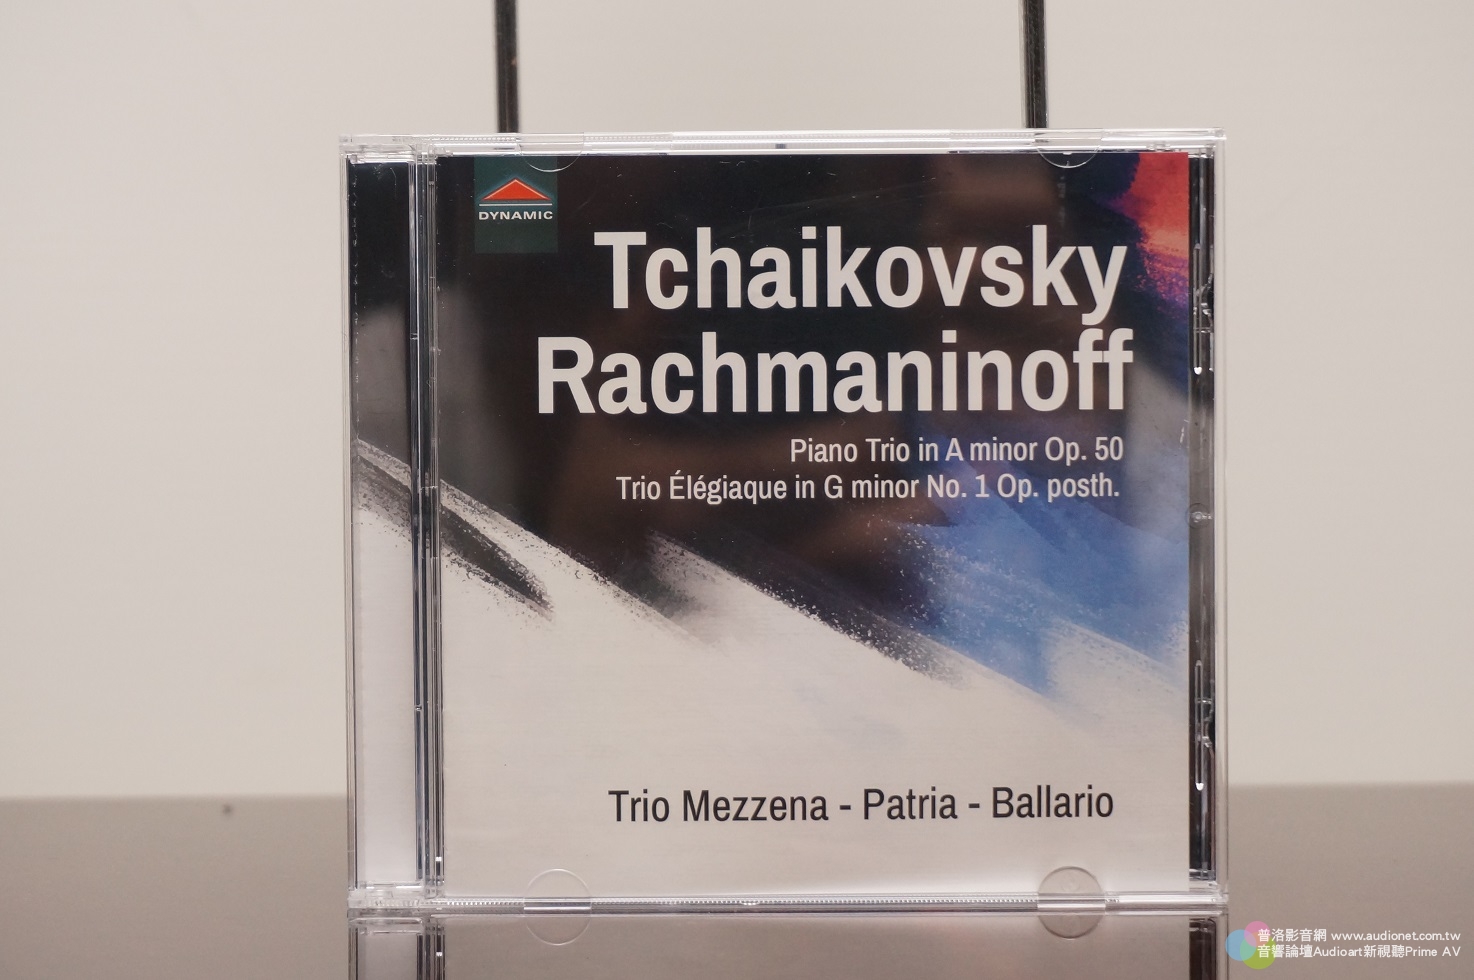 柴可夫斯基與拉赫曼尼諾夫鋼琴三重奏，除了欣賞音樂還可檢驗音響系統